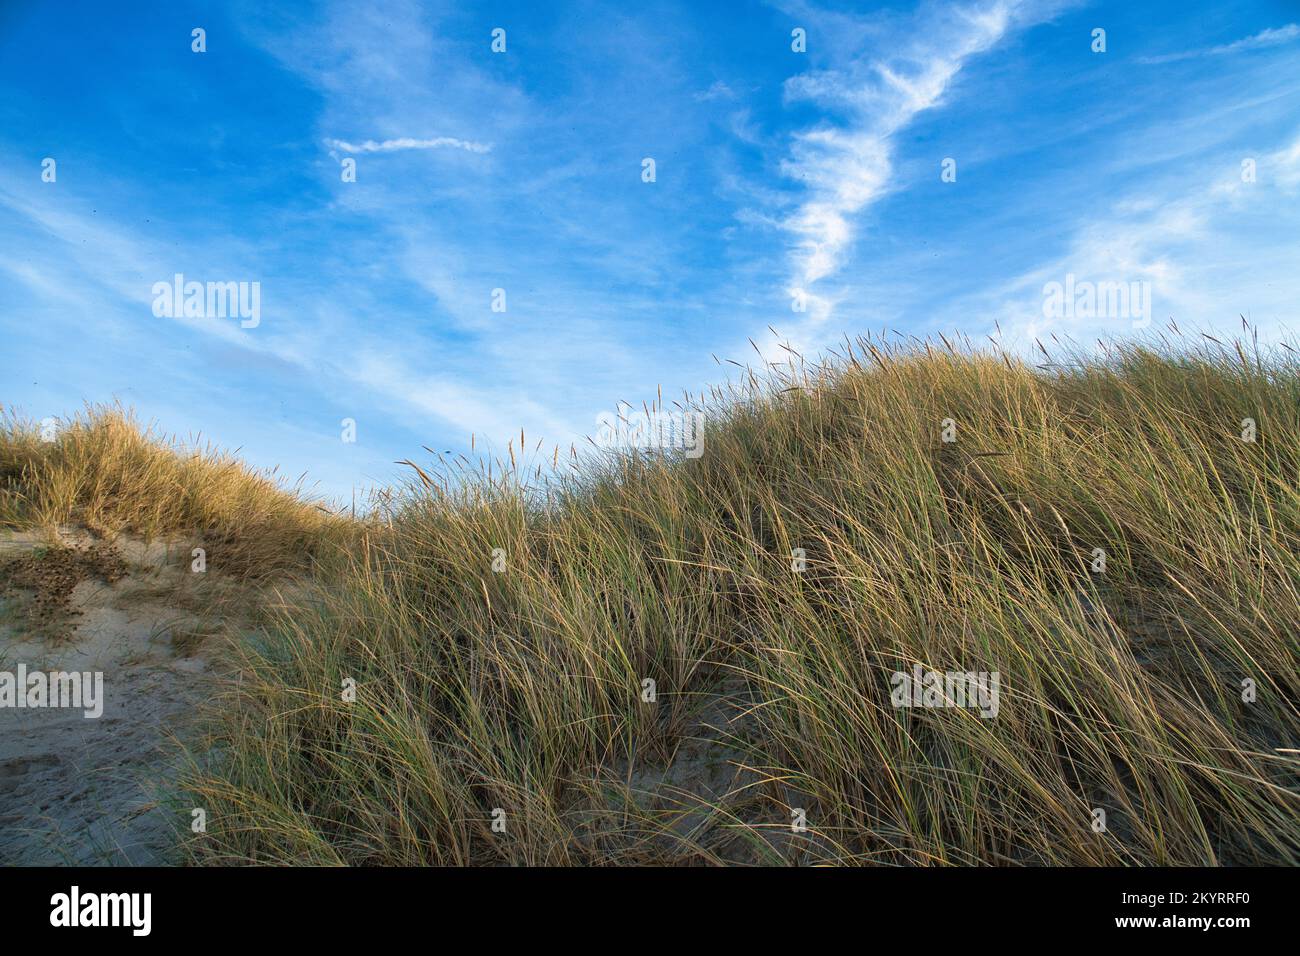 Traversée de la plage au Danemark par la mer. Dunes, eau de sable et nuages sur la côte. Excursion à la mer Baltique. Vacances sur la plage. Paysage scandinave Banque D'Images